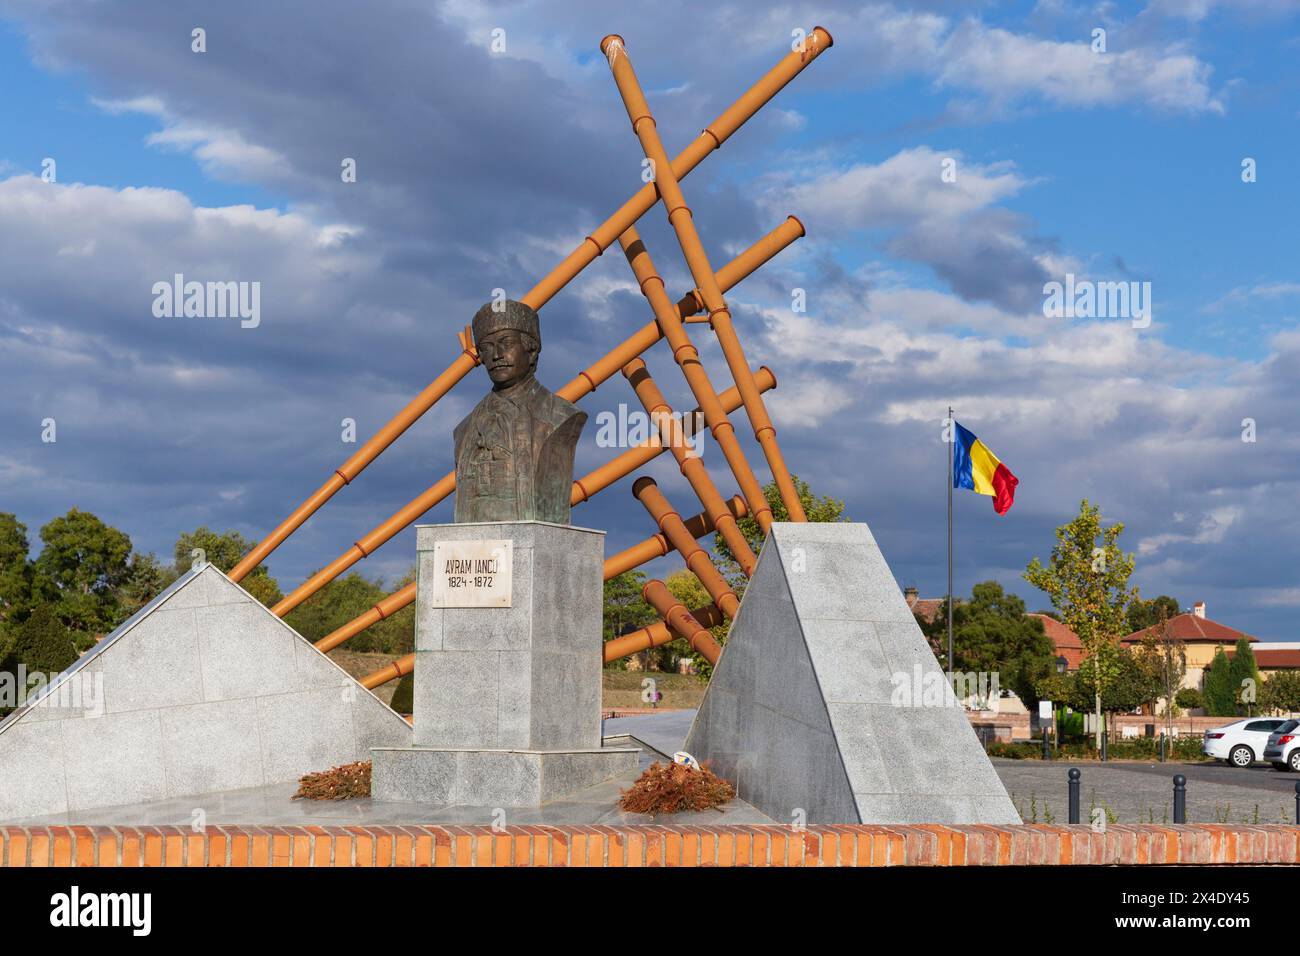 Rumänien, Alba. Statue von Avram Iancu, einem siebenbürgischen rumänischen Anwalt, der eine wichtige Rolle bei den Revolutionen des Österreichischen Reiches von 1848 bis 1849 spielte. Stockfoto